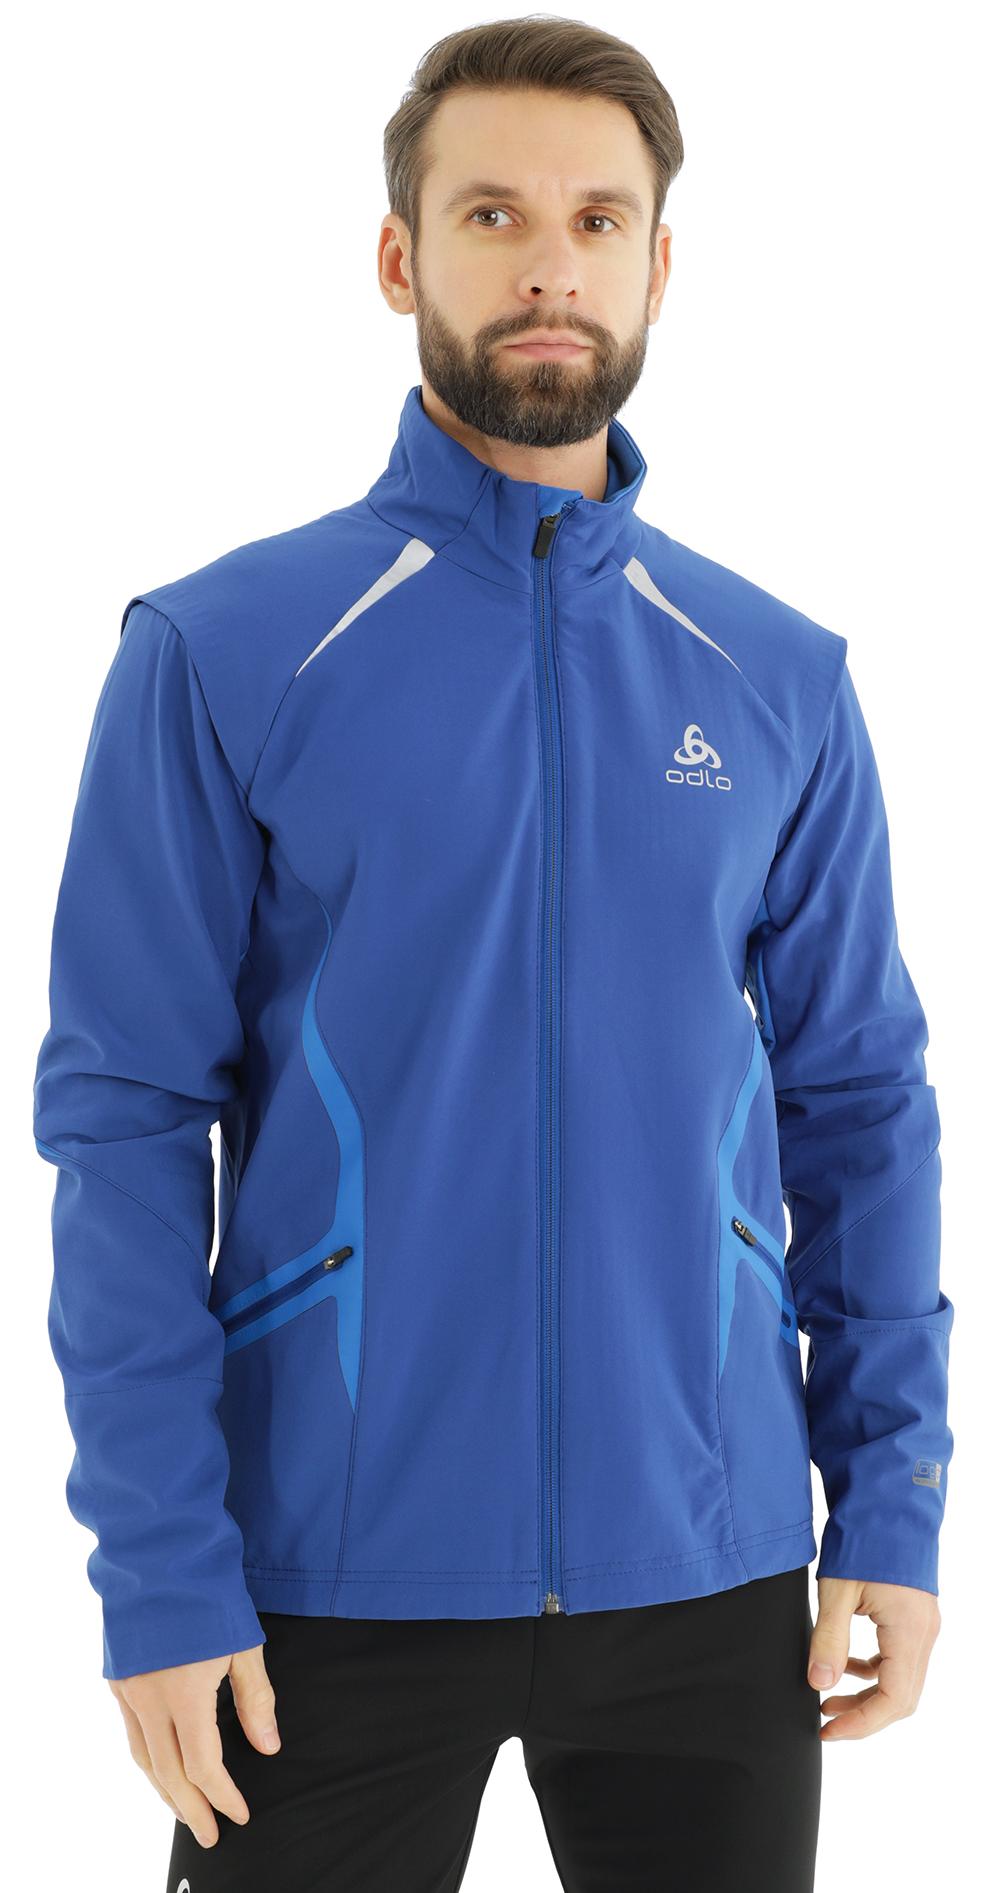 Спортивная куртка мужская Odlo Jacket Blizzard Men синяя, синий, полиэстер  - купить